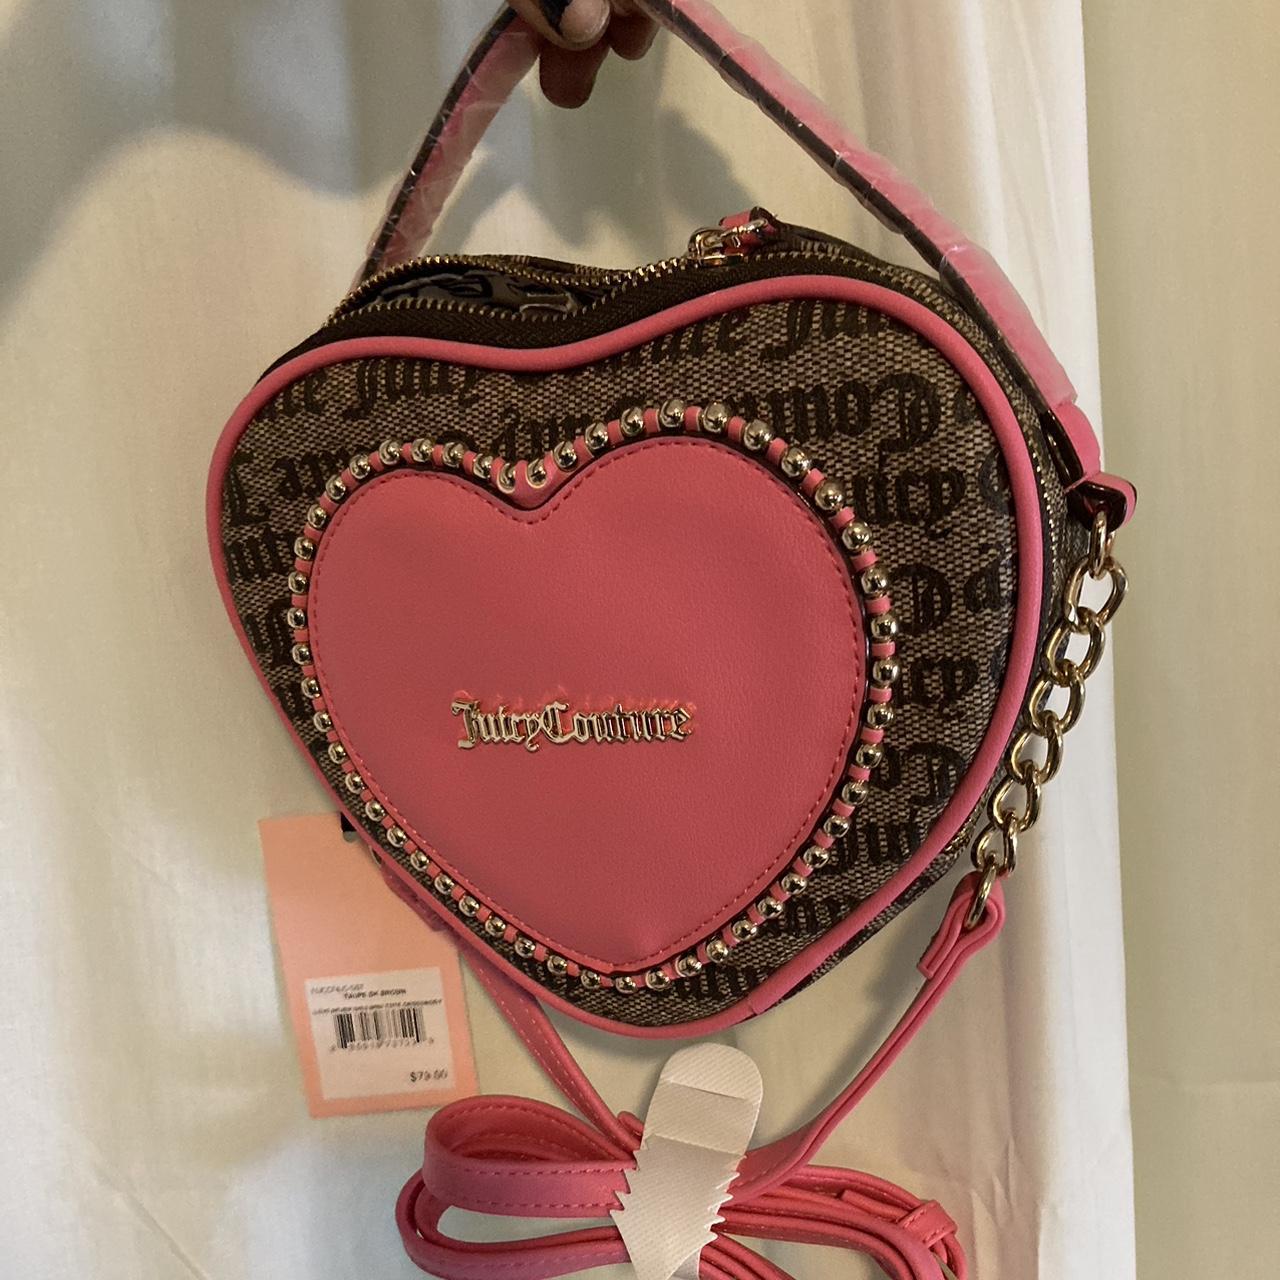 Heart shaped purse, never worn - Depop